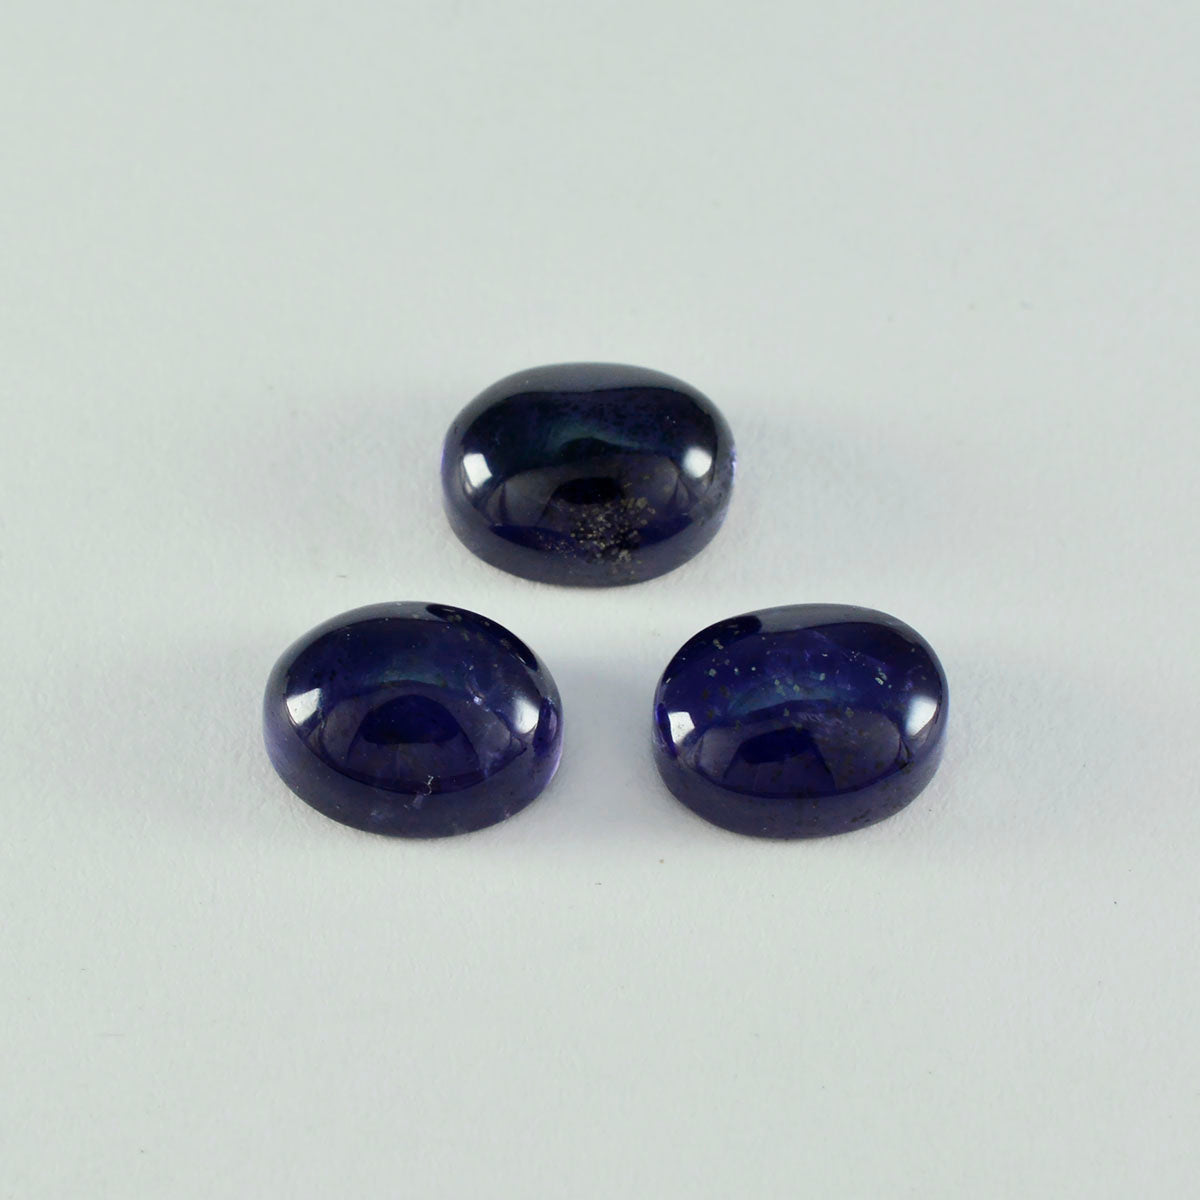 Riyogems 1 Stück blauer Iolith-Cabochon, 12 x 16 mm, ovale Form, Edelstein von fantastischer Qualität